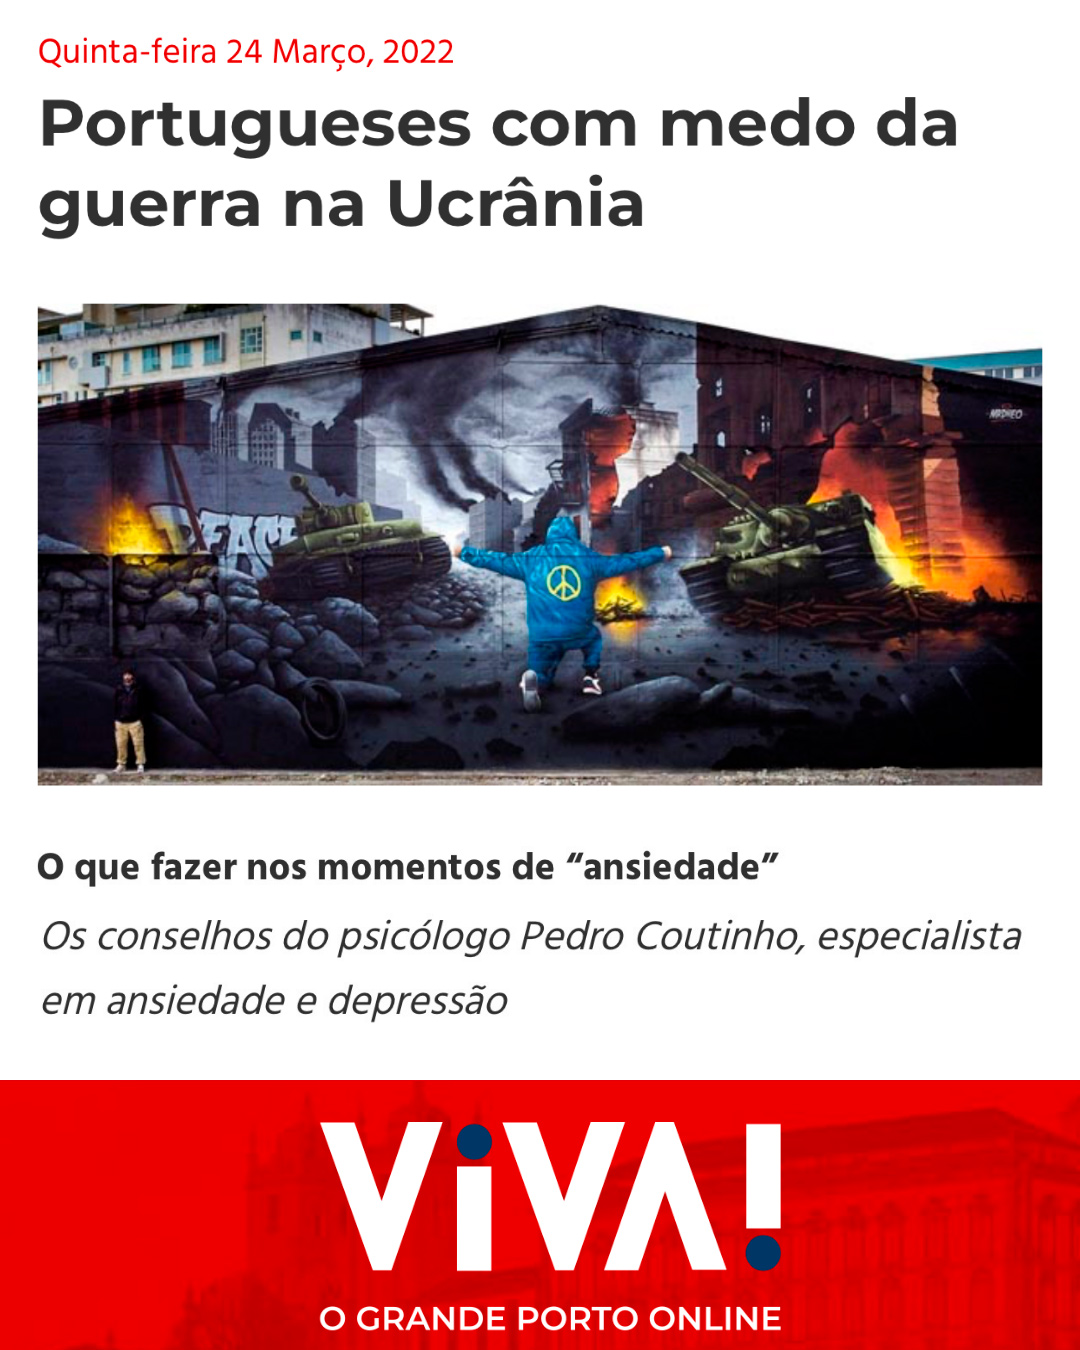 portuguese-com-medo-da-guerra-na-ucrania